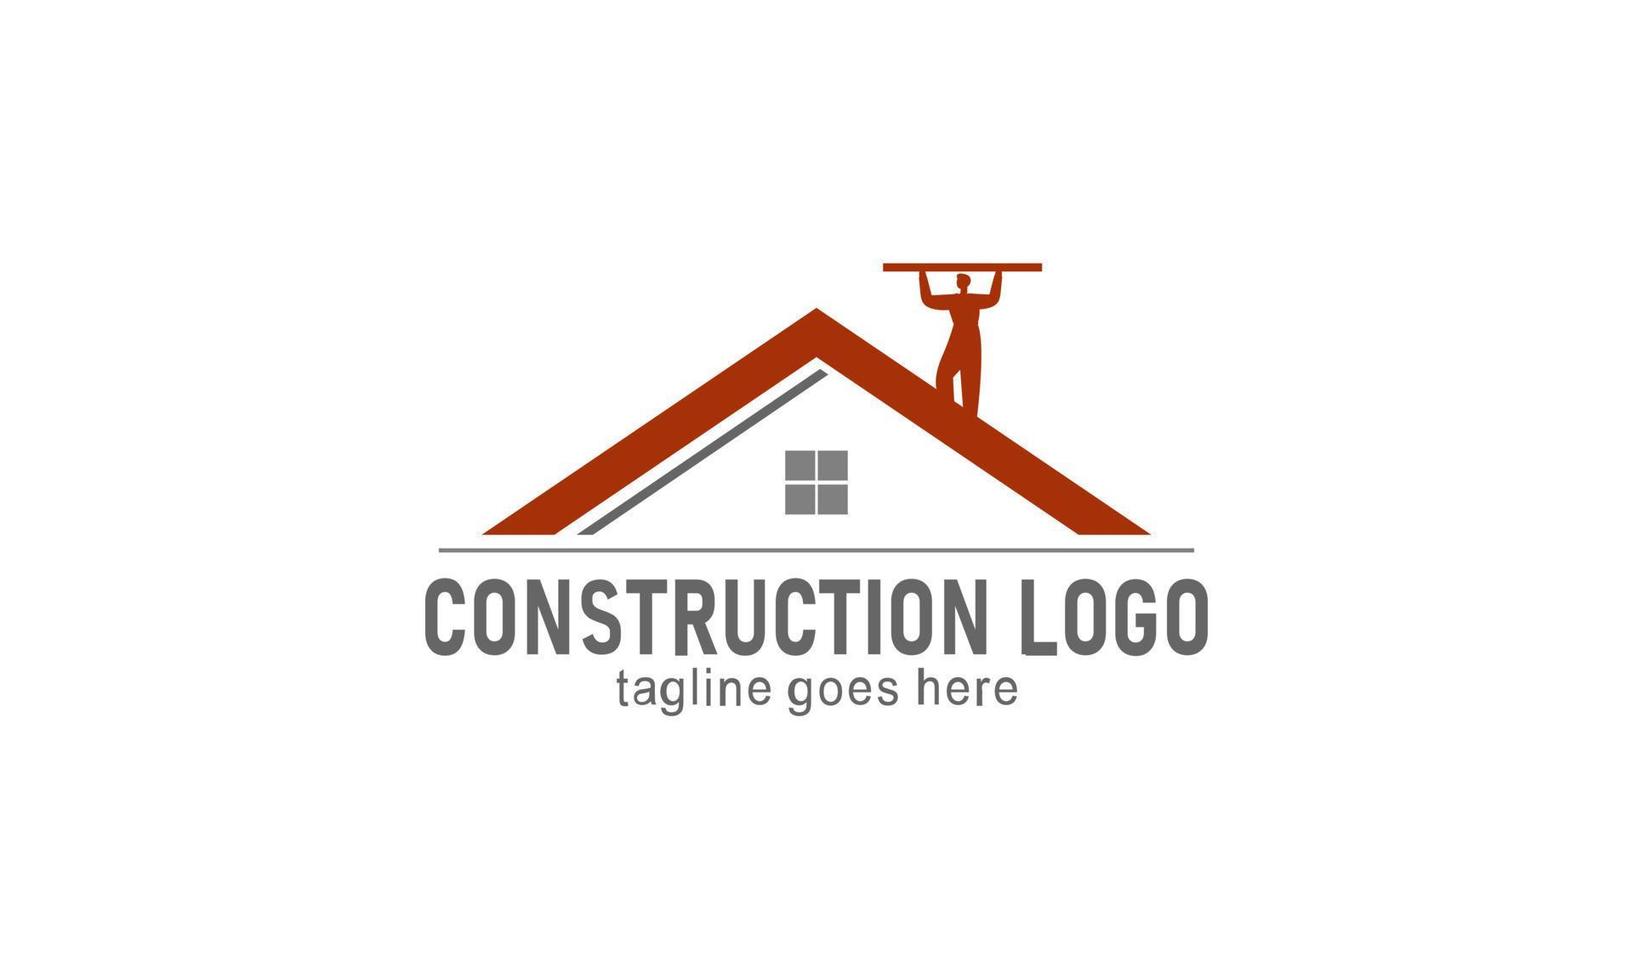 Home construction company logo vector